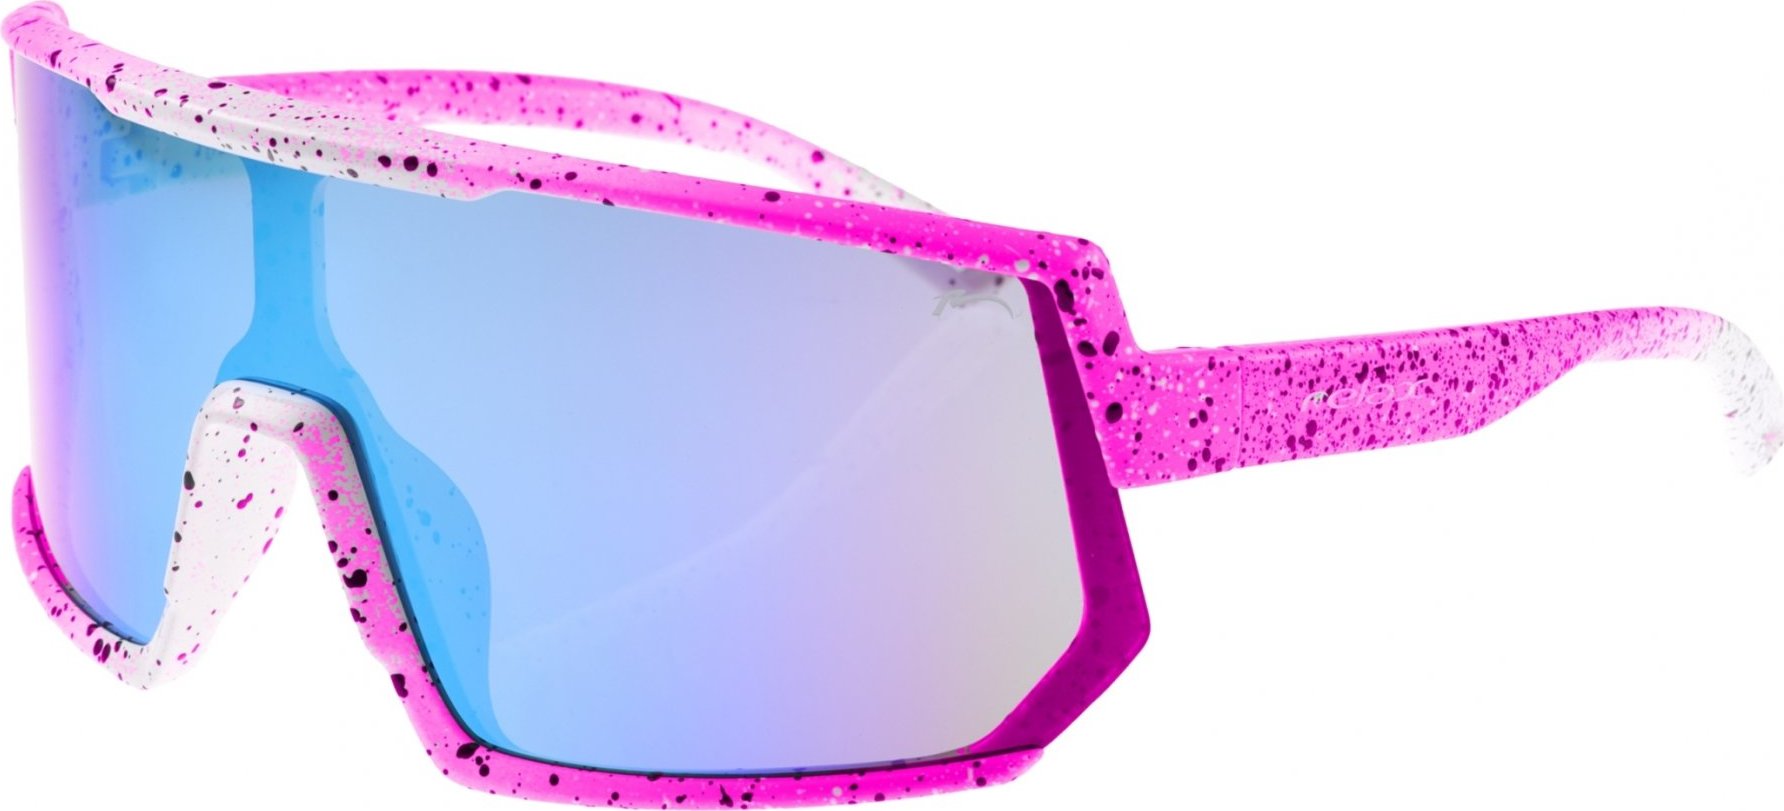 Sportovní sluneční brýle RELAX Lantao růžové